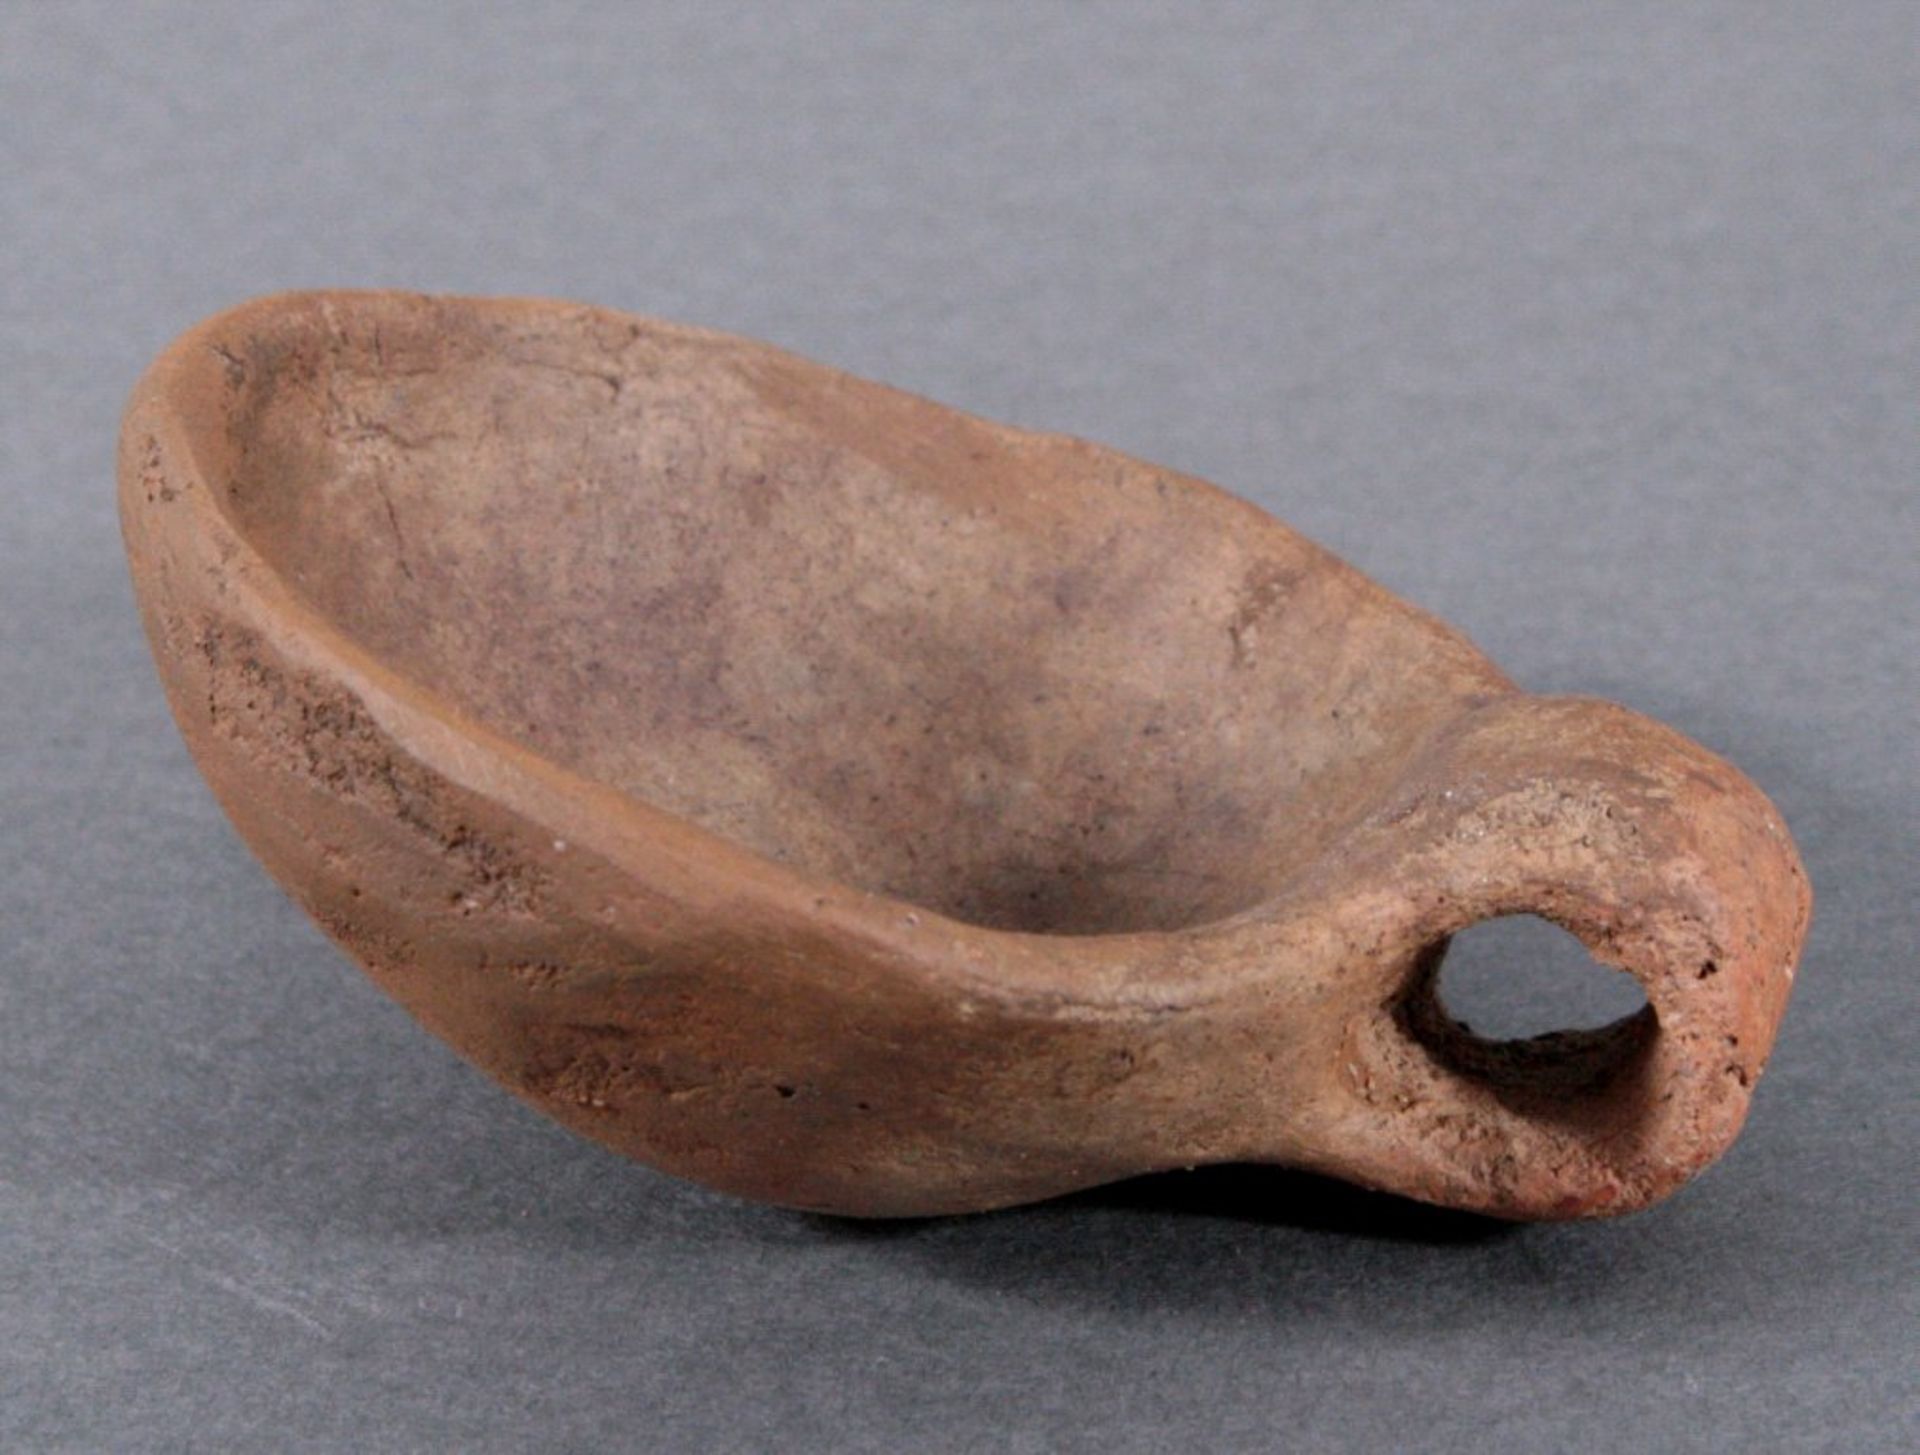 Kleiner Omphalosschöpfer, Lausitzer Kultur - 900- 500 v.Chr.Bronzezeit, aus braunem Ton, mit